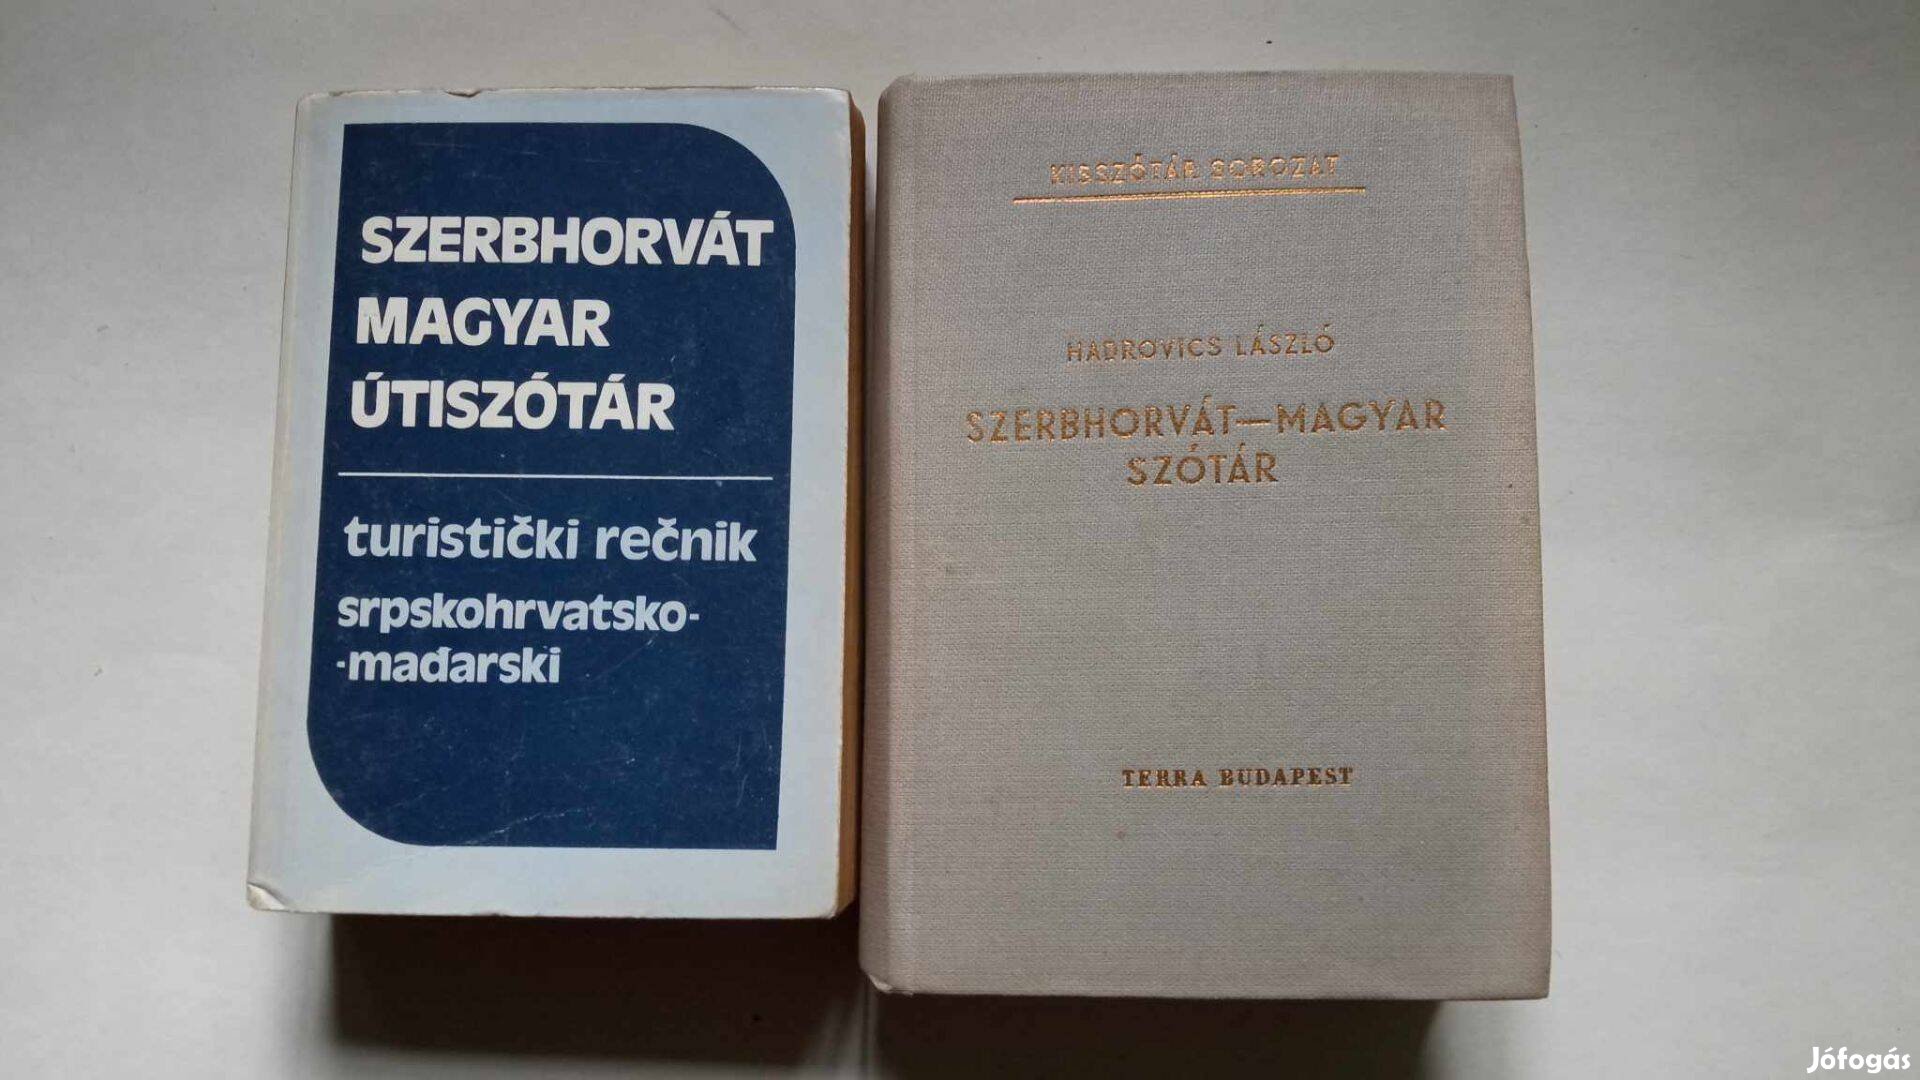 Szerbhorvát - magyar horvát 2 szótár 800 Ft együtt